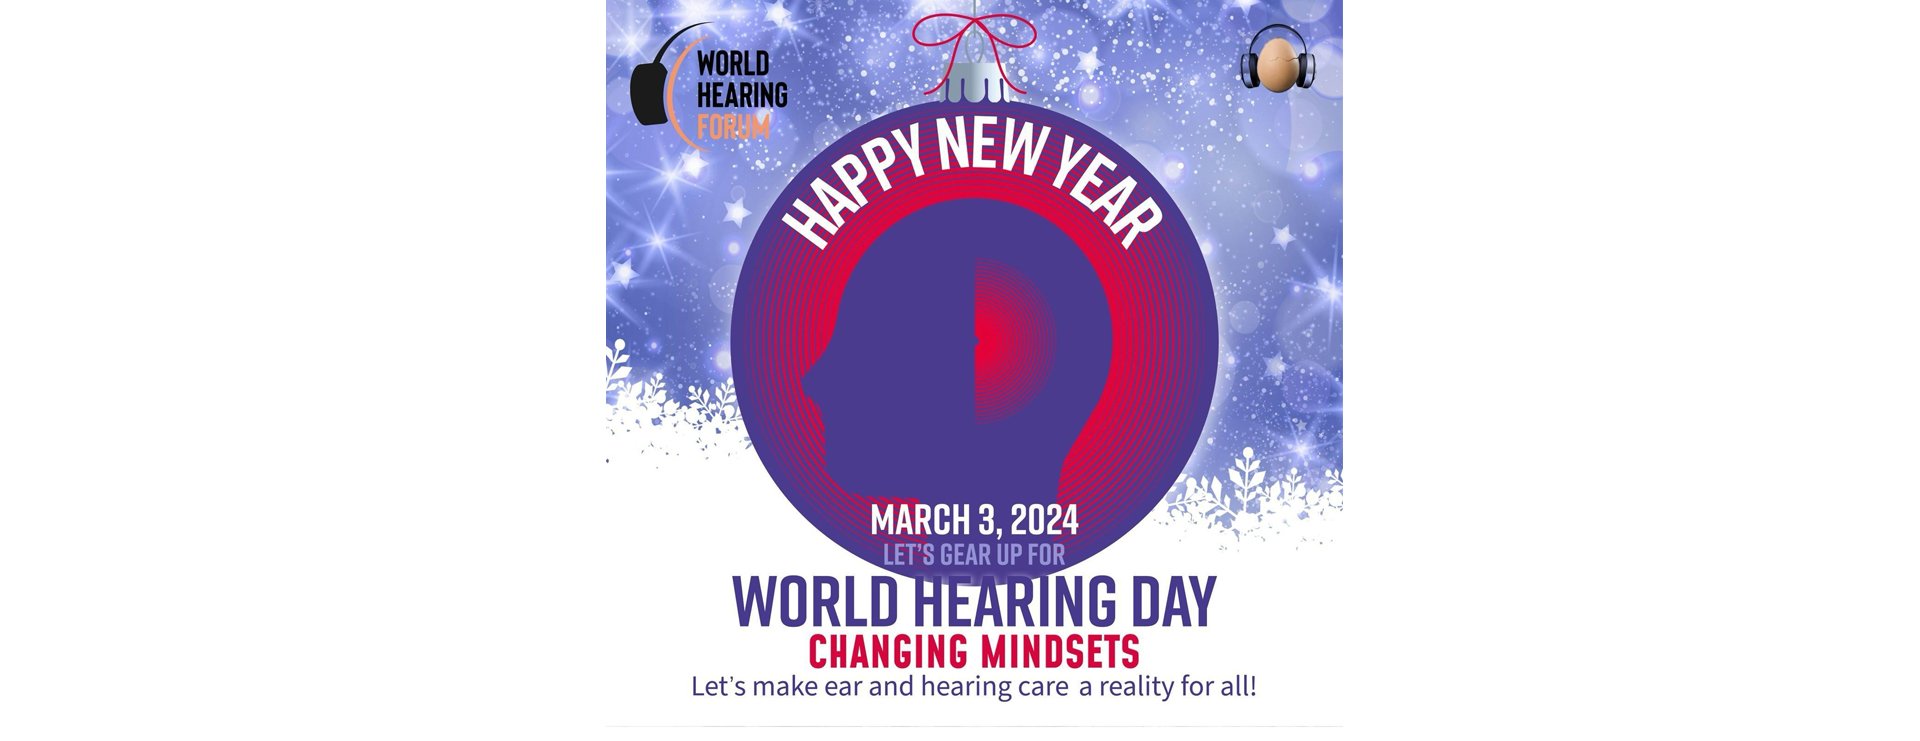 World hearing day2567